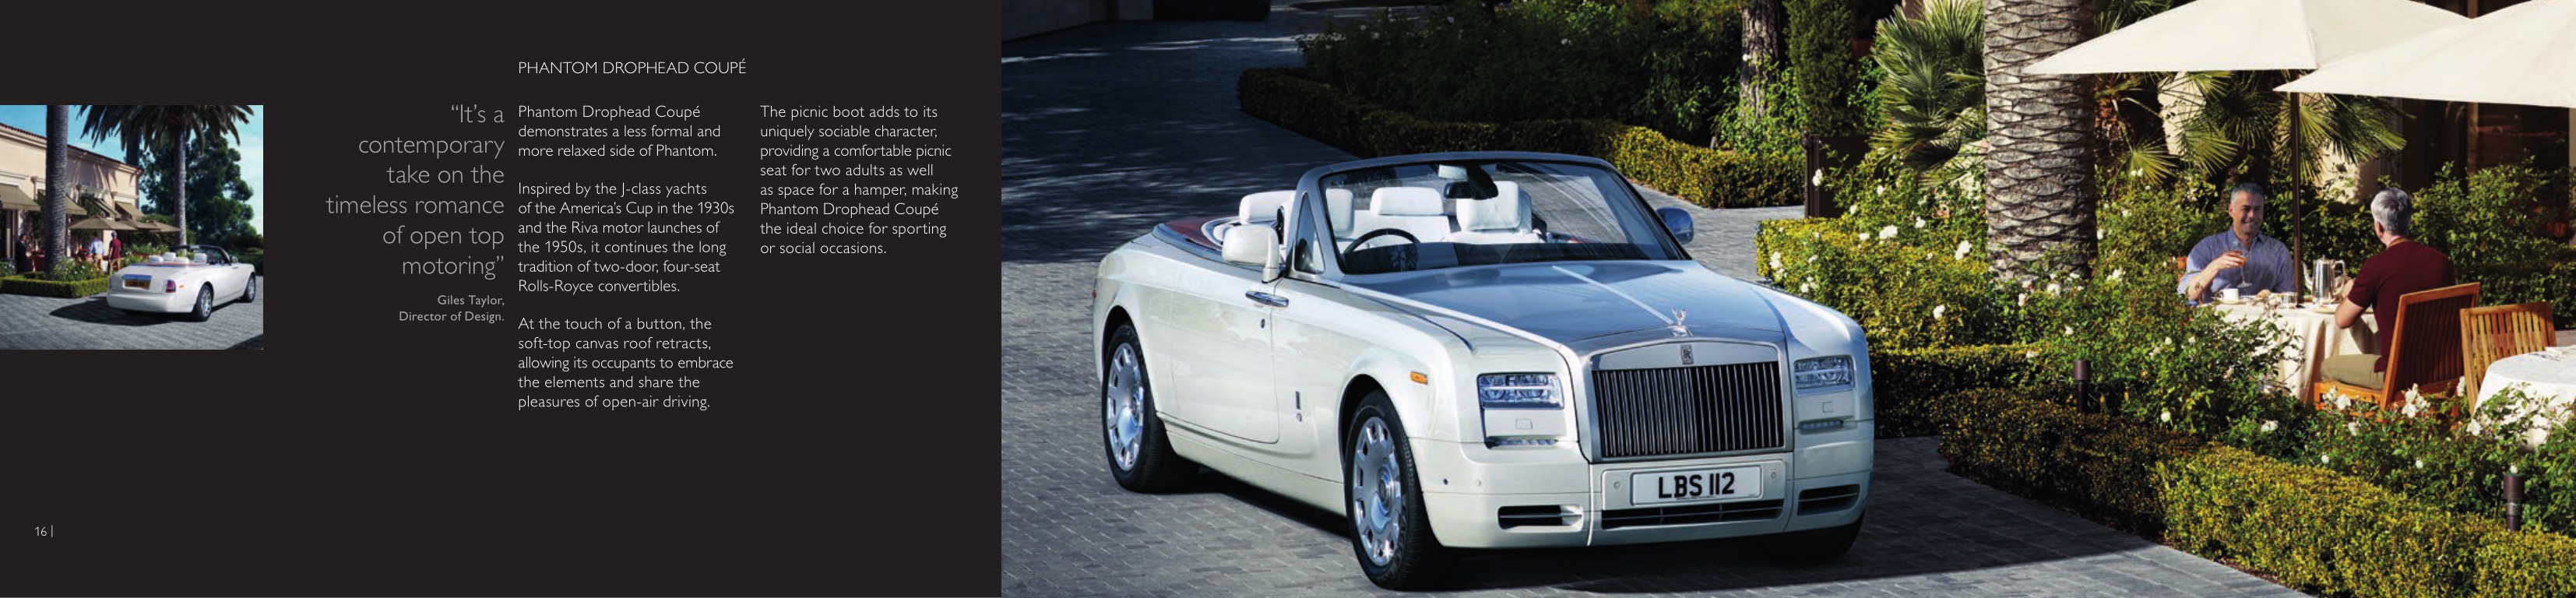 2013 Rolls-Royce Model Range Brochure Page 12